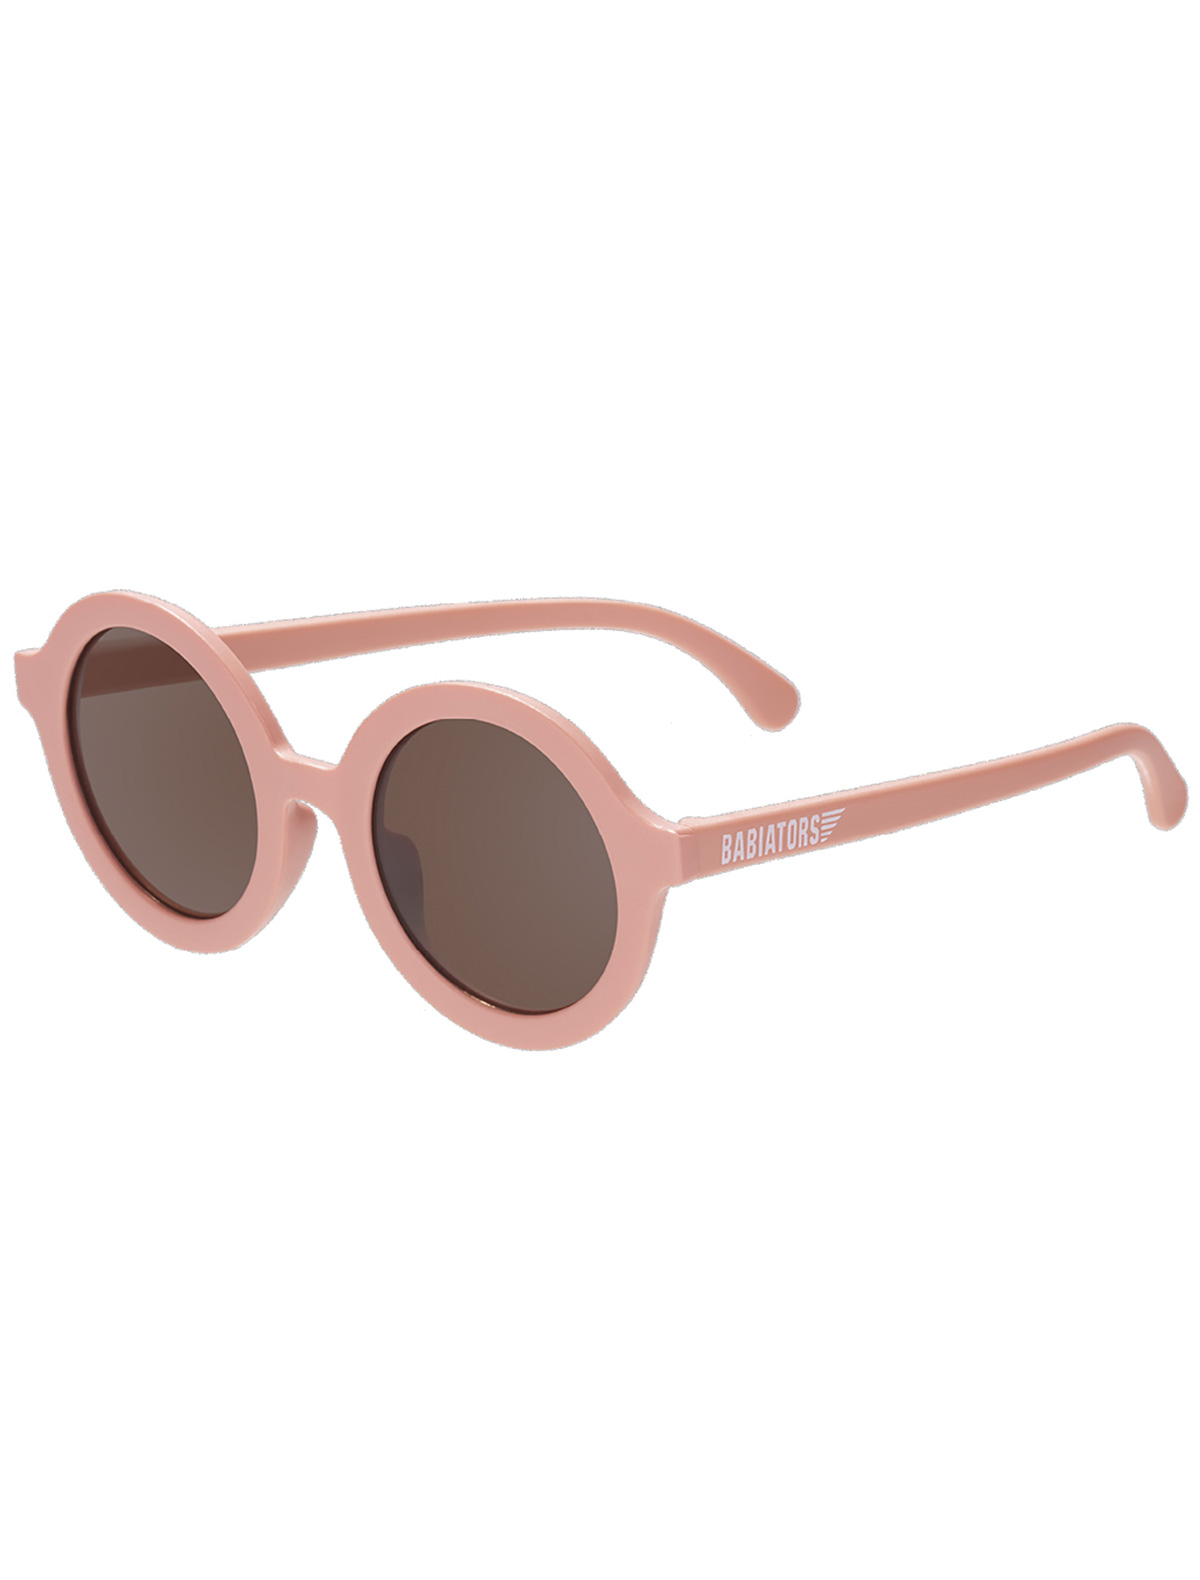 солнцезащитные очки babiators малыши, розовые